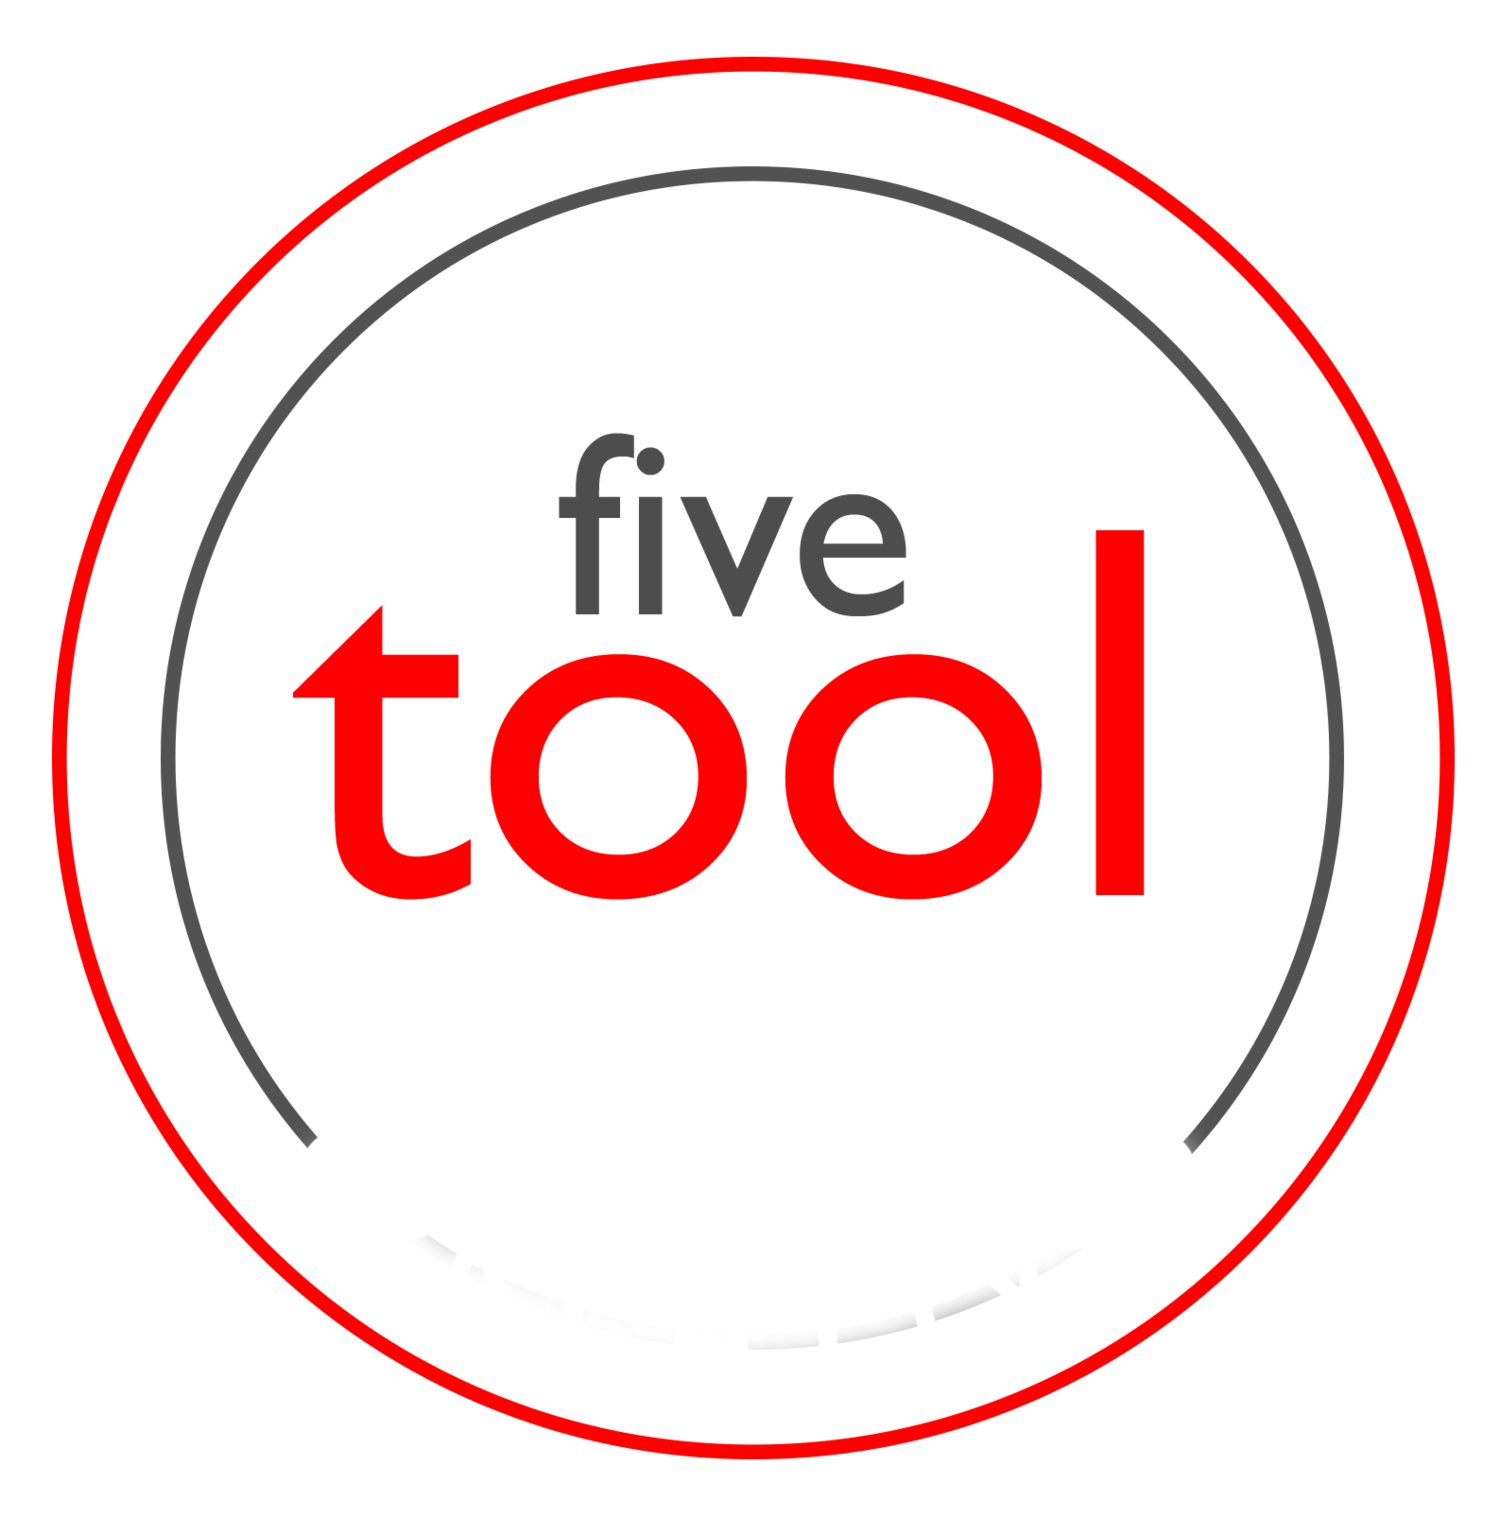 Five Tool Creative